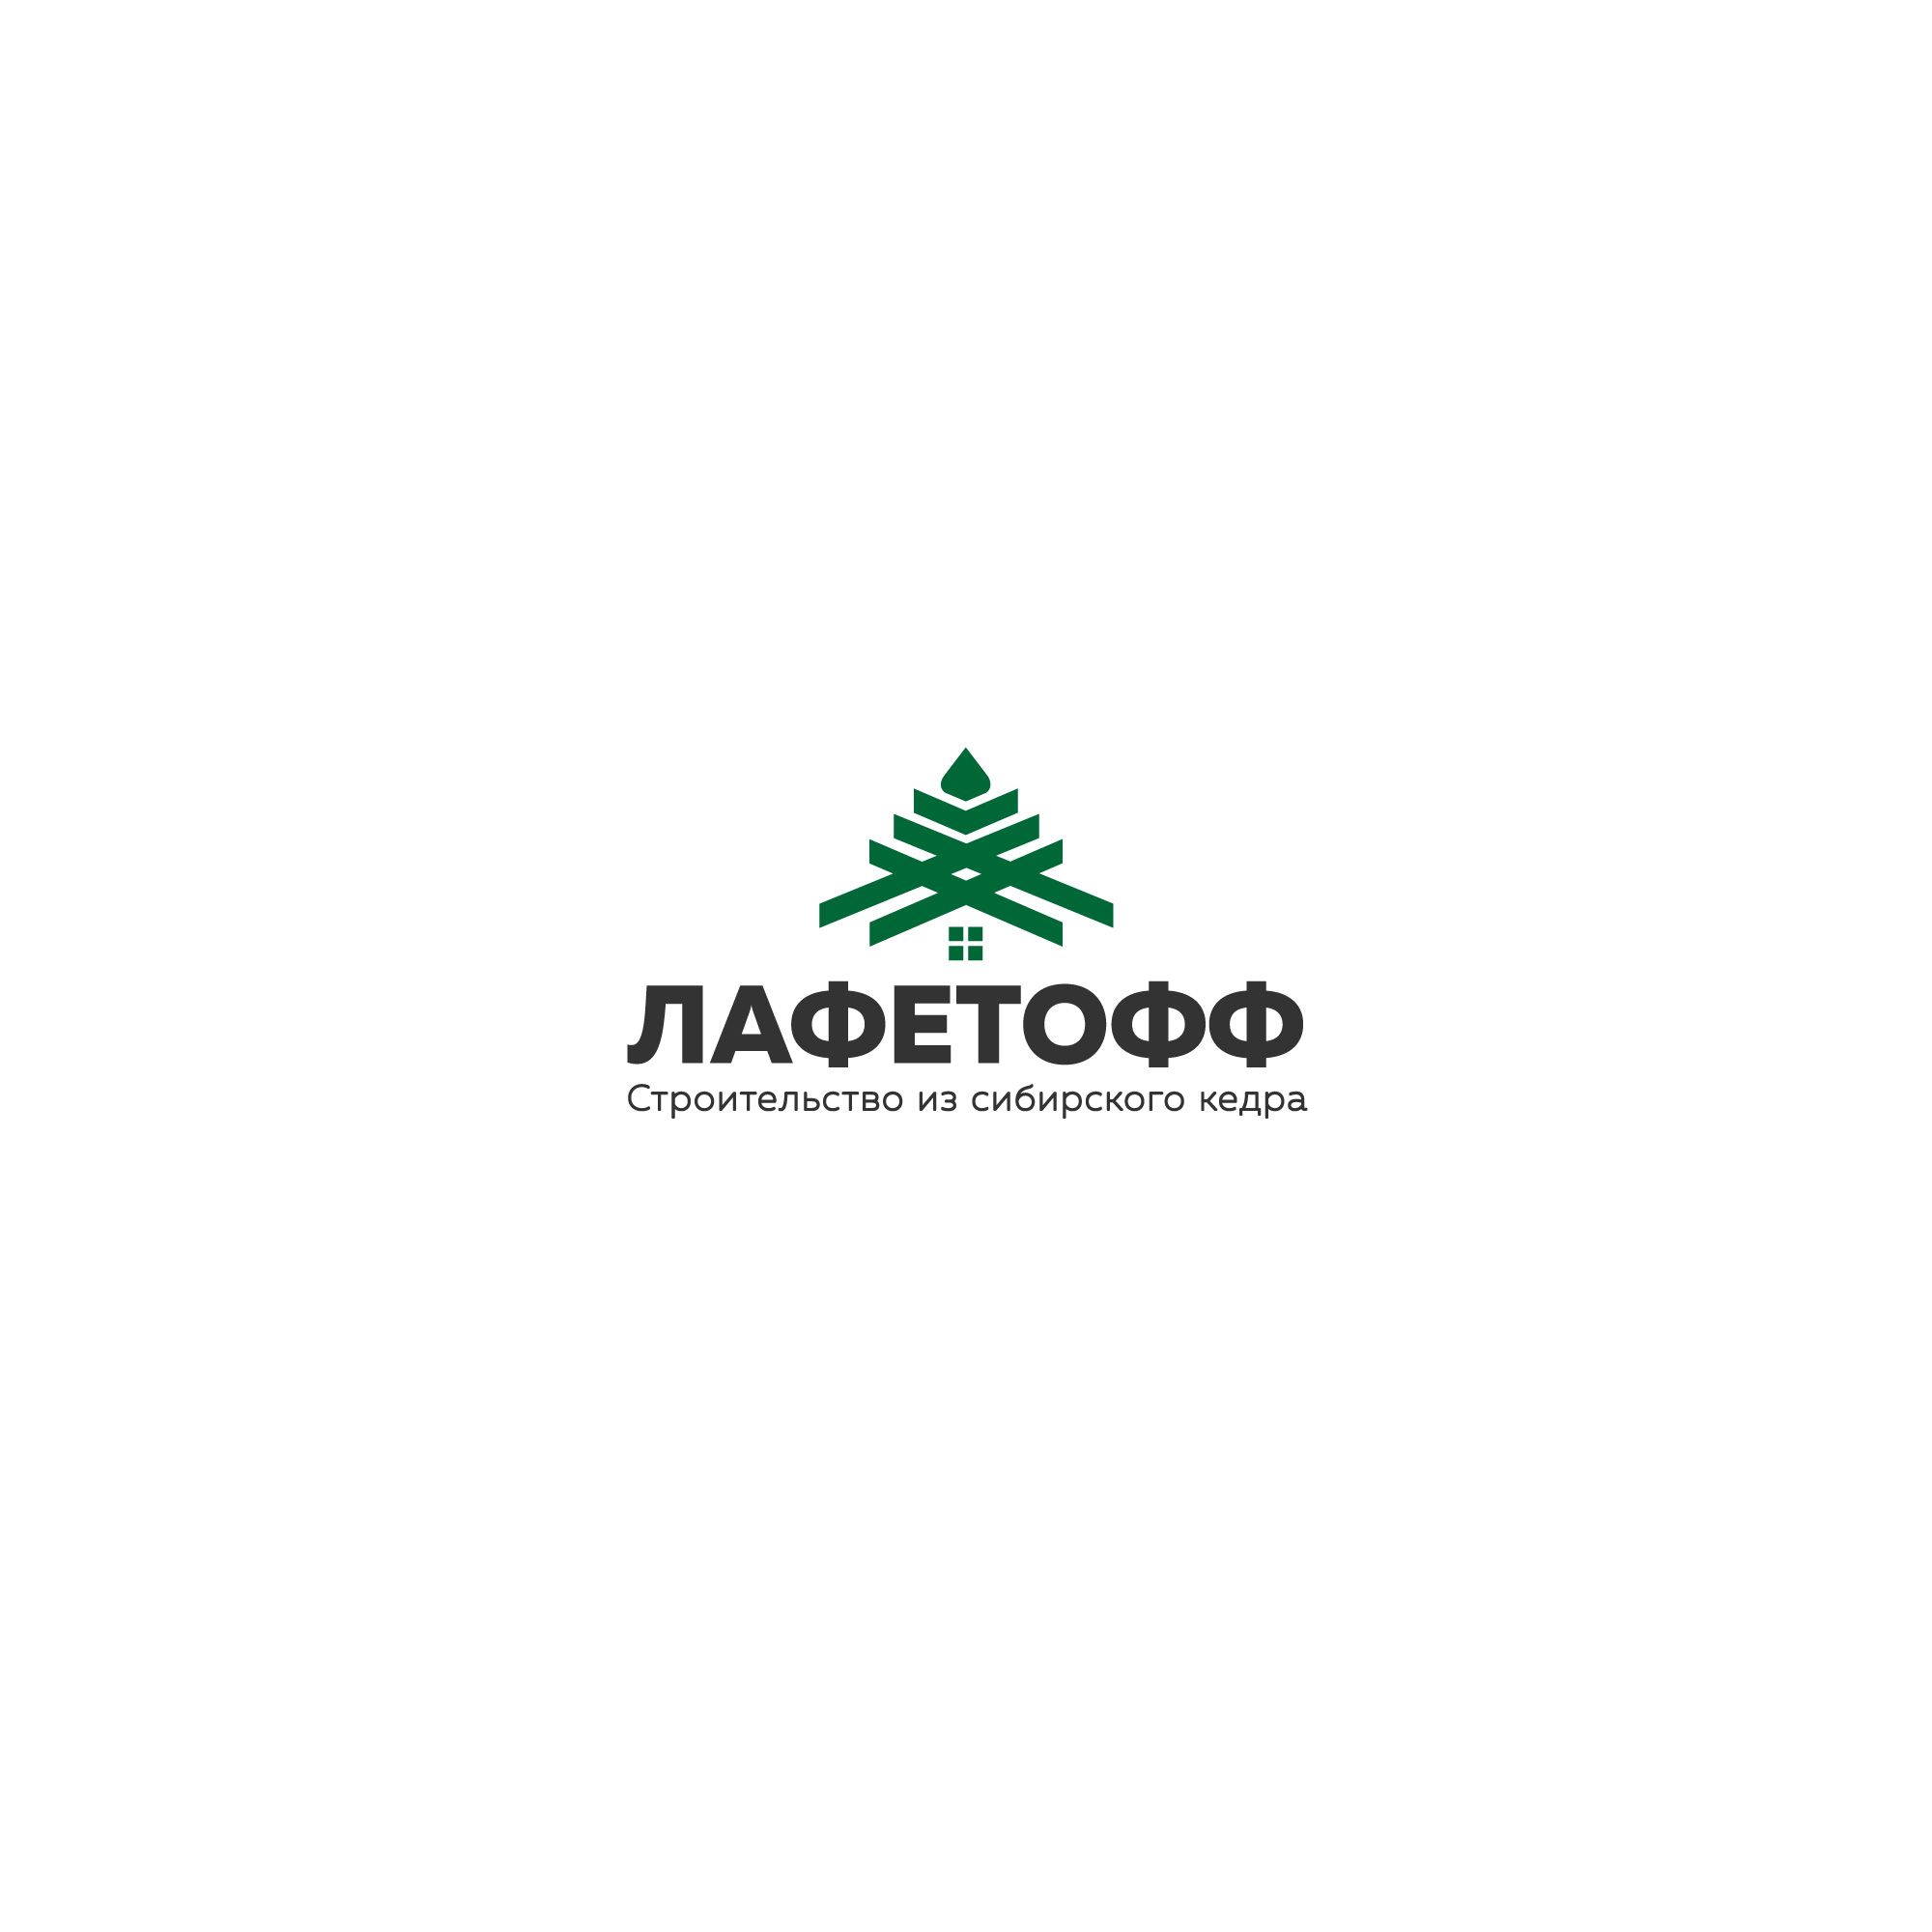 Логотип для Лафетофф - дизайнер designer12345